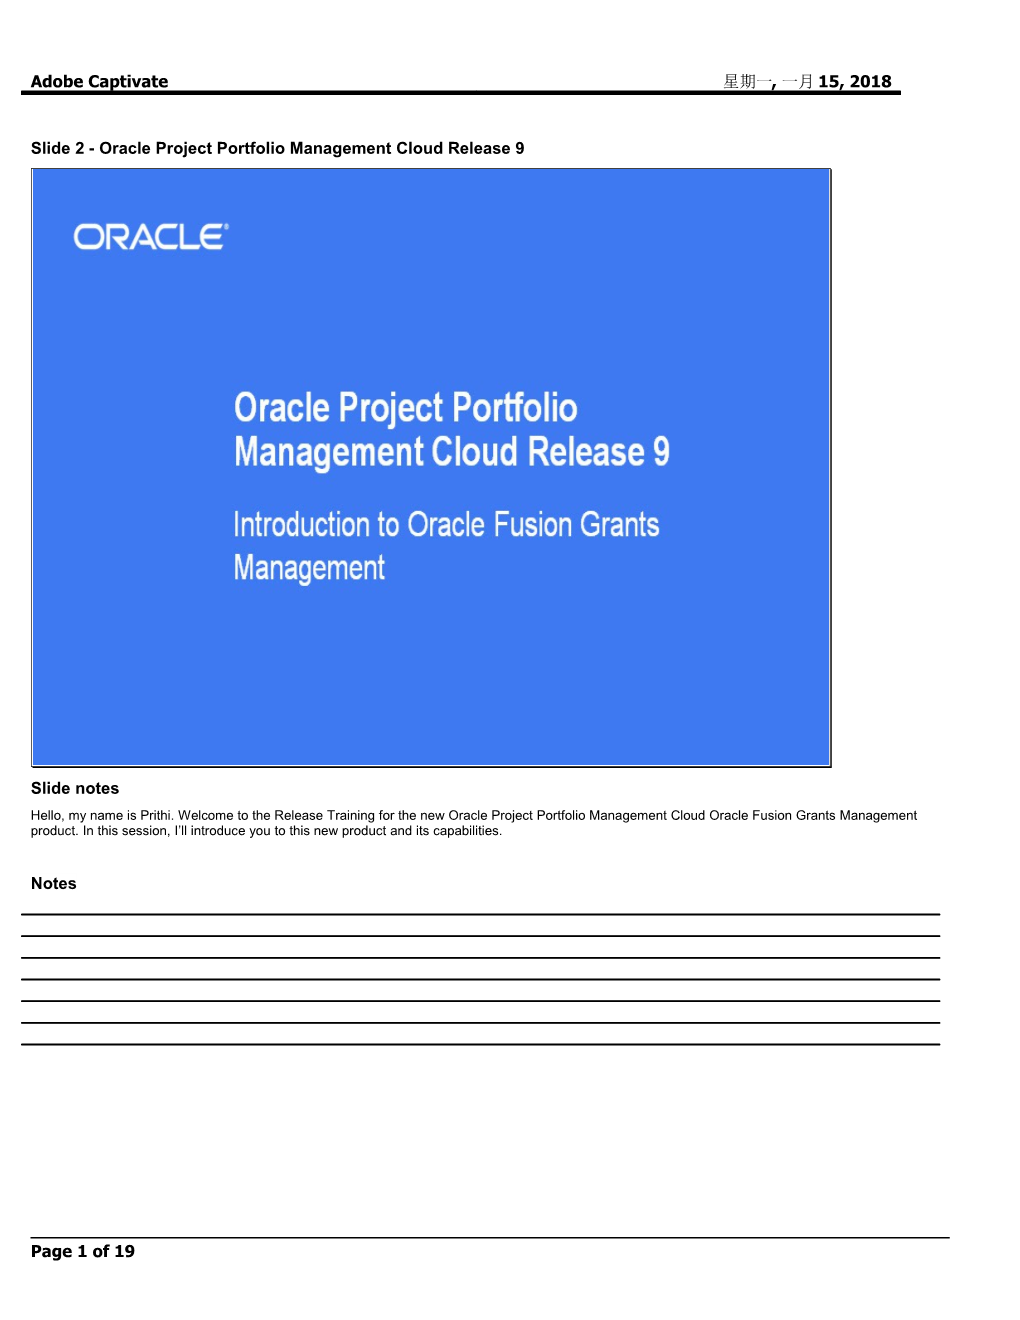 Slide 2 - Oracle Project Portfolio Management Cloud Release 9